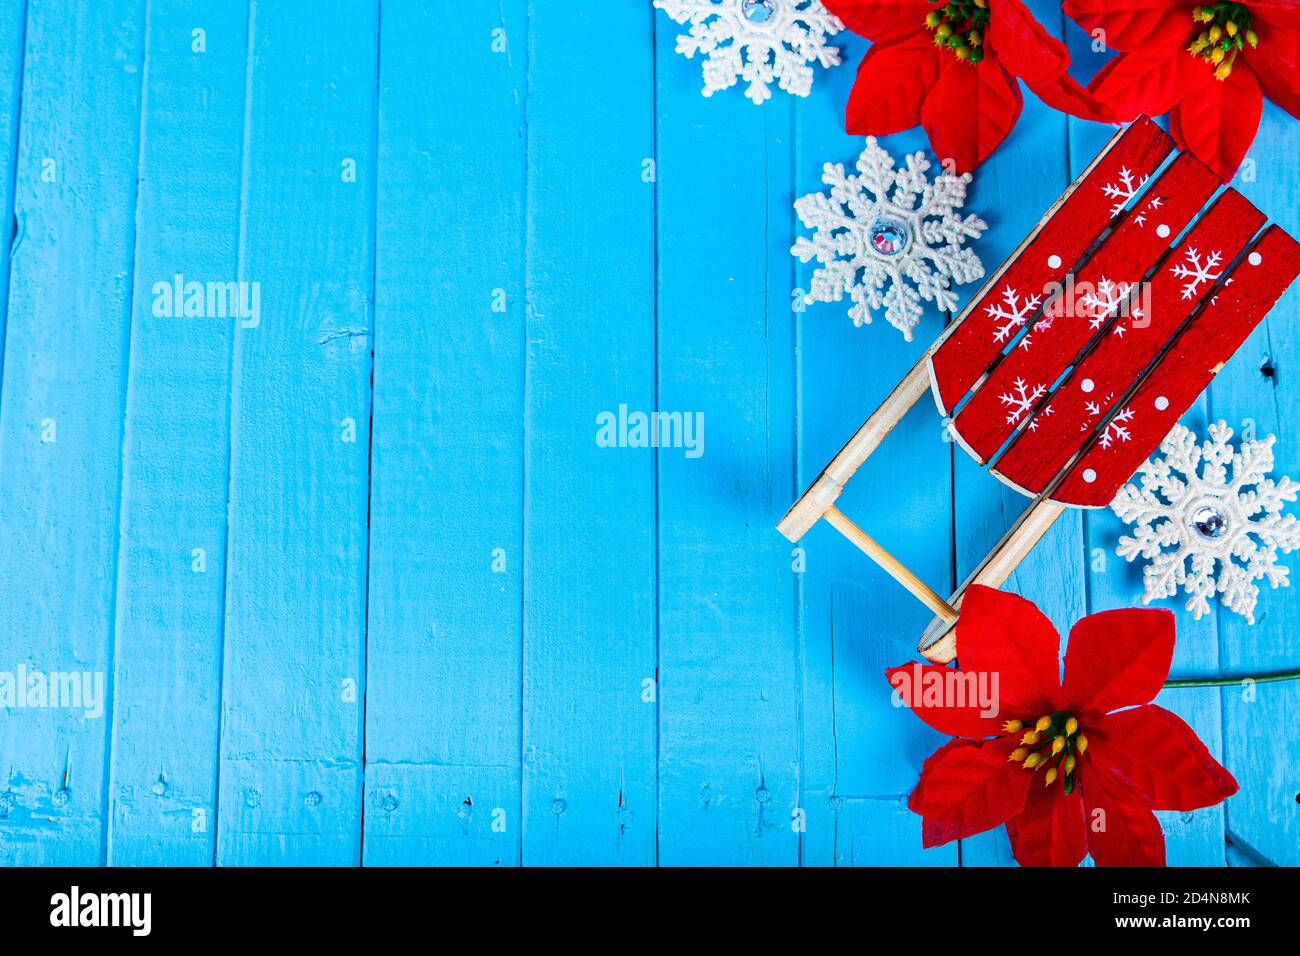 Stillleben zu Weihnachten. Schlitten, Schneeflocken und Weihnachtssterne auf blauem Holzhintergrund, Draufsicht. Stockfoto